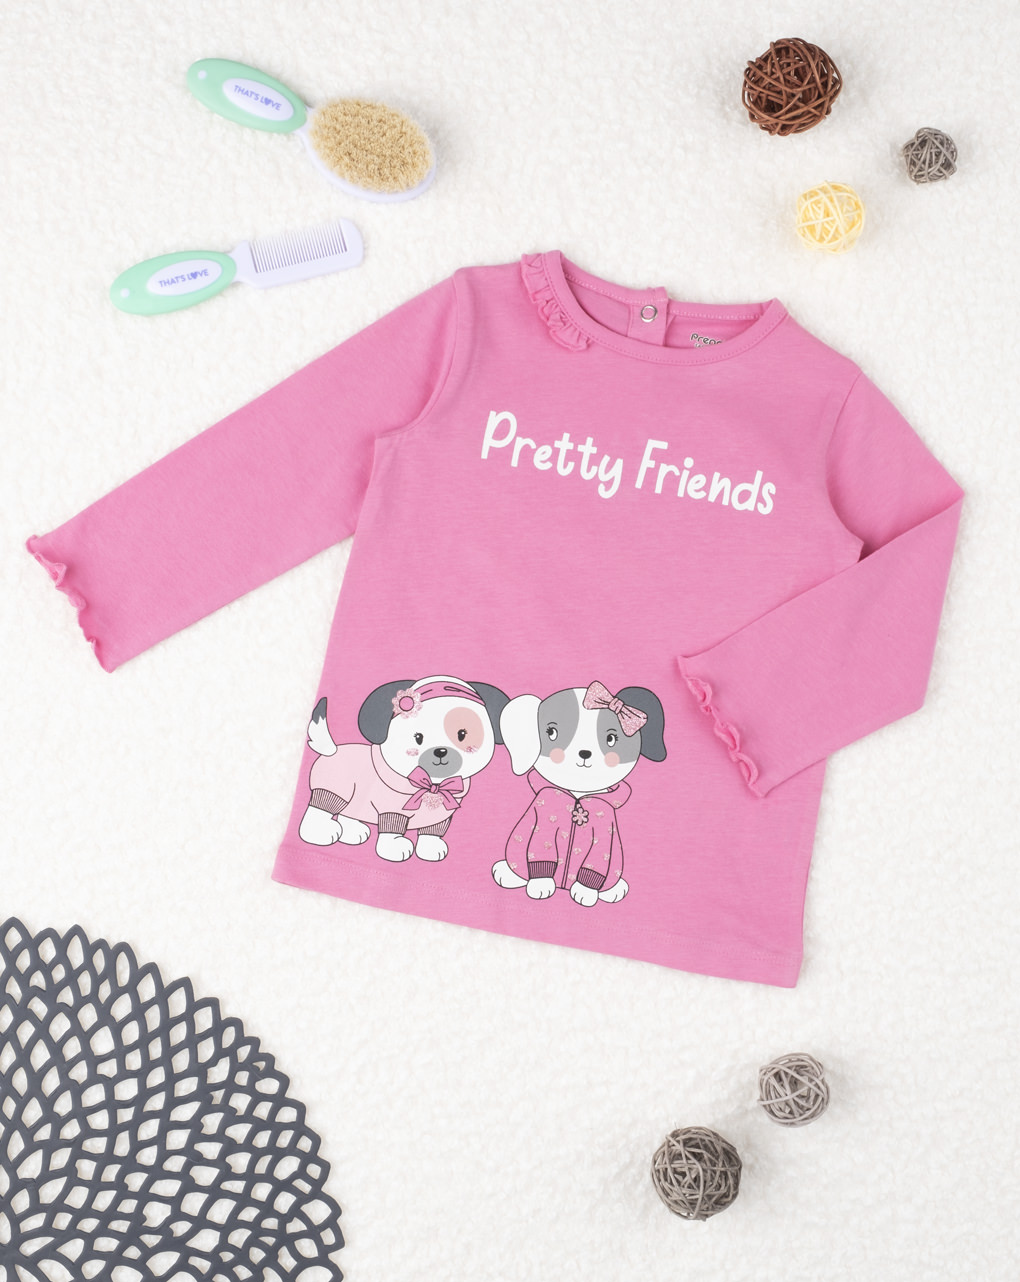 μπλούζα μακρυμάνικη ροζ με σκυλάκια για κορίτσι - Prénatal